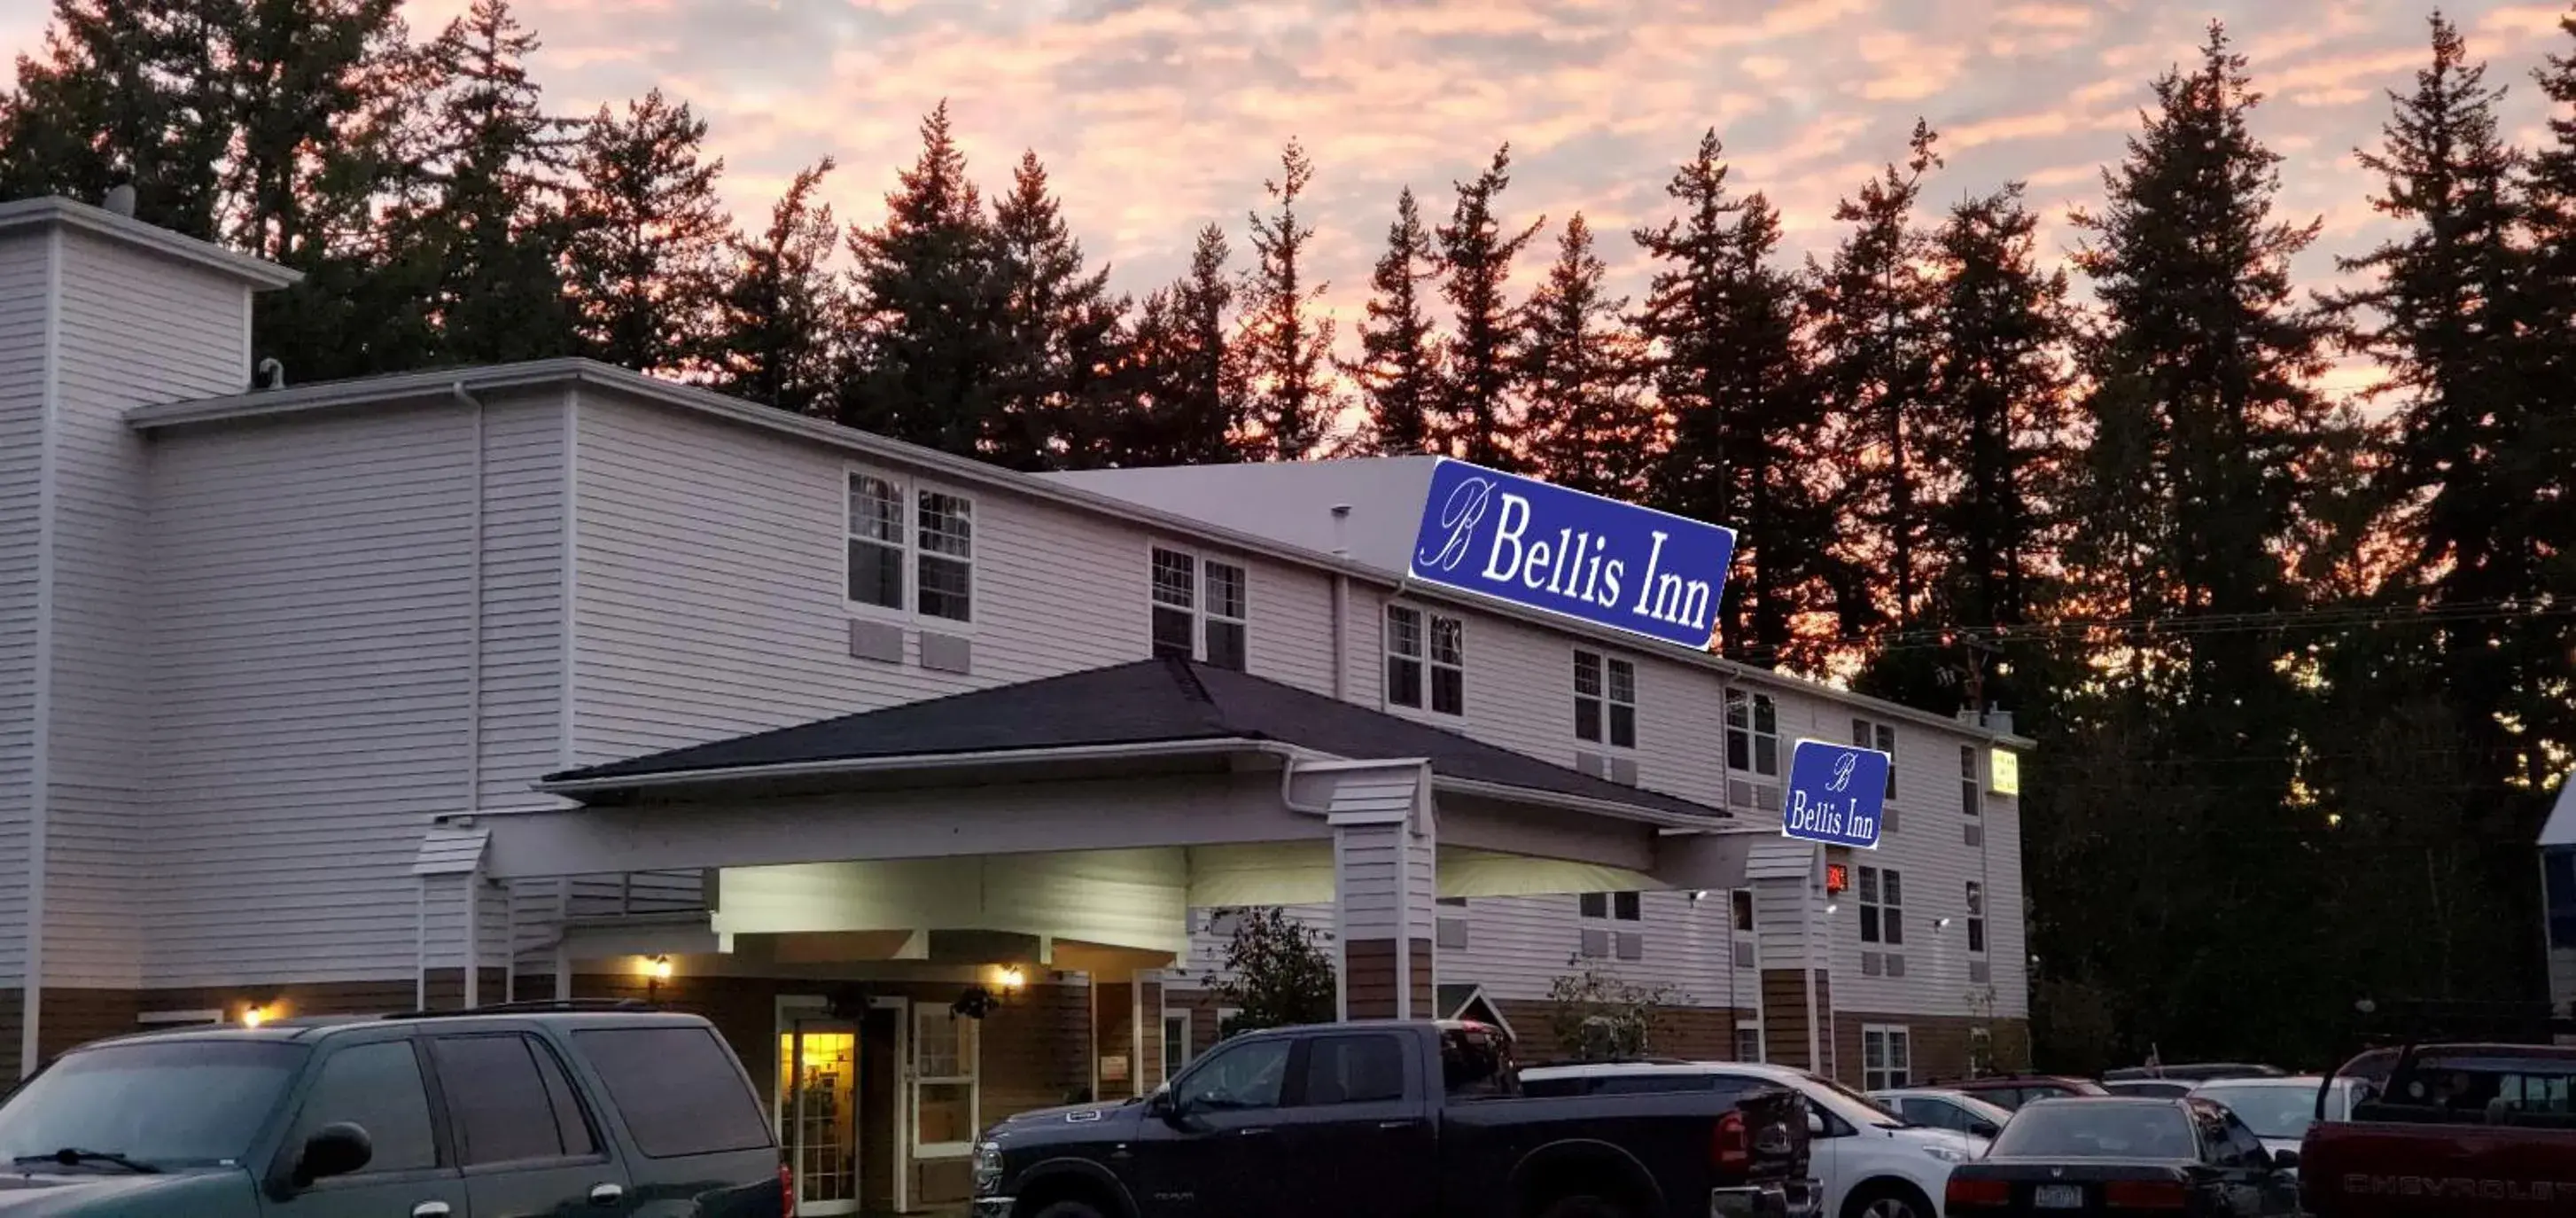 Property Building in Bellis Inn